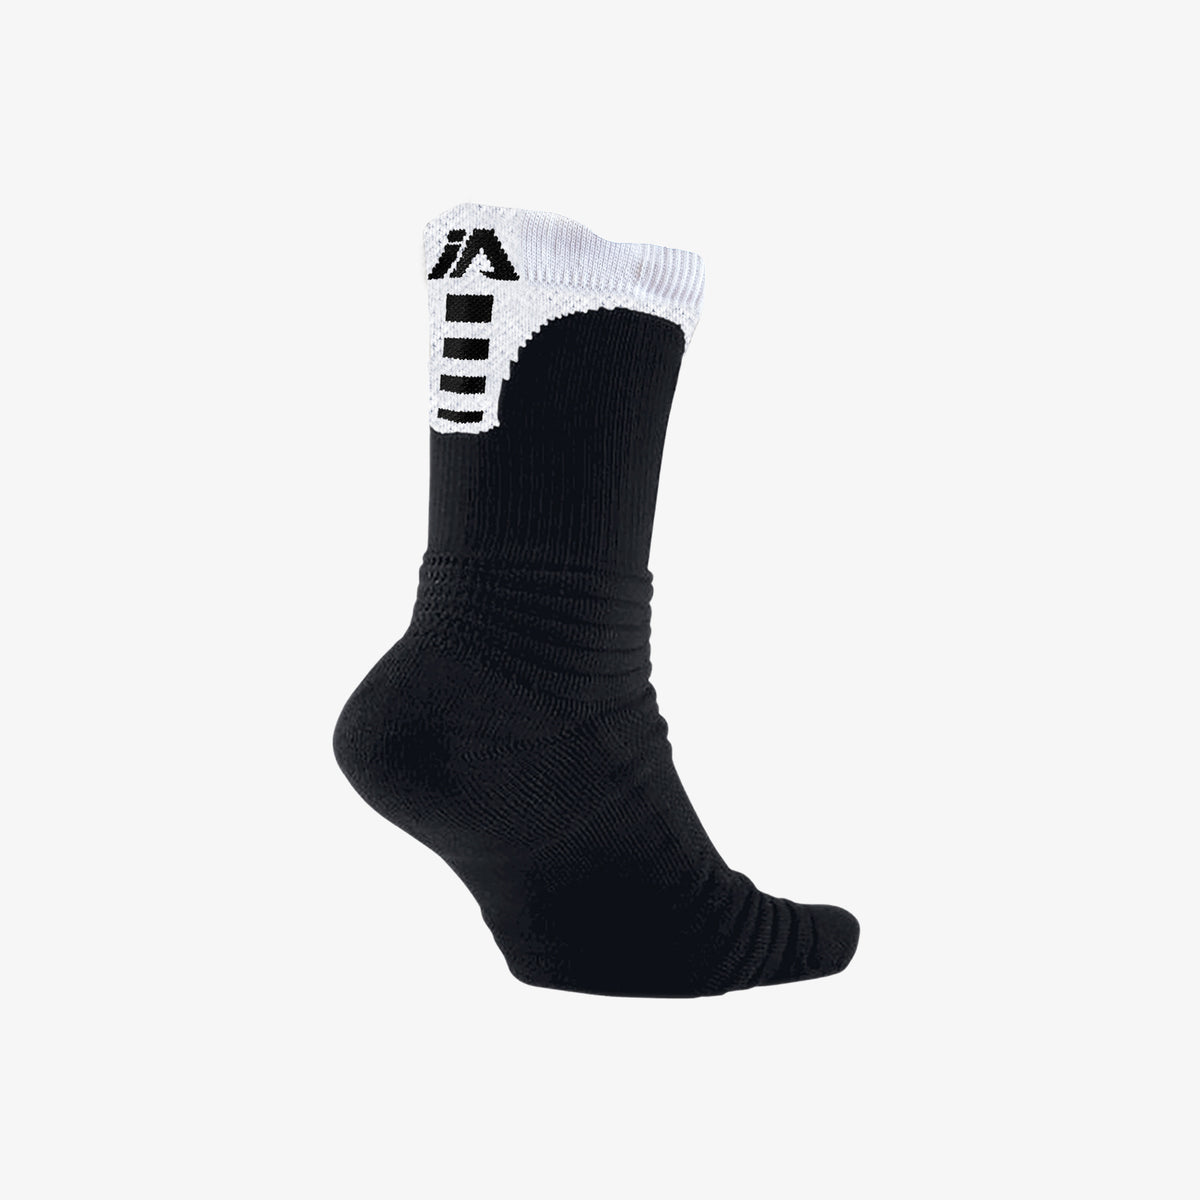 Crew Socks - Black/White